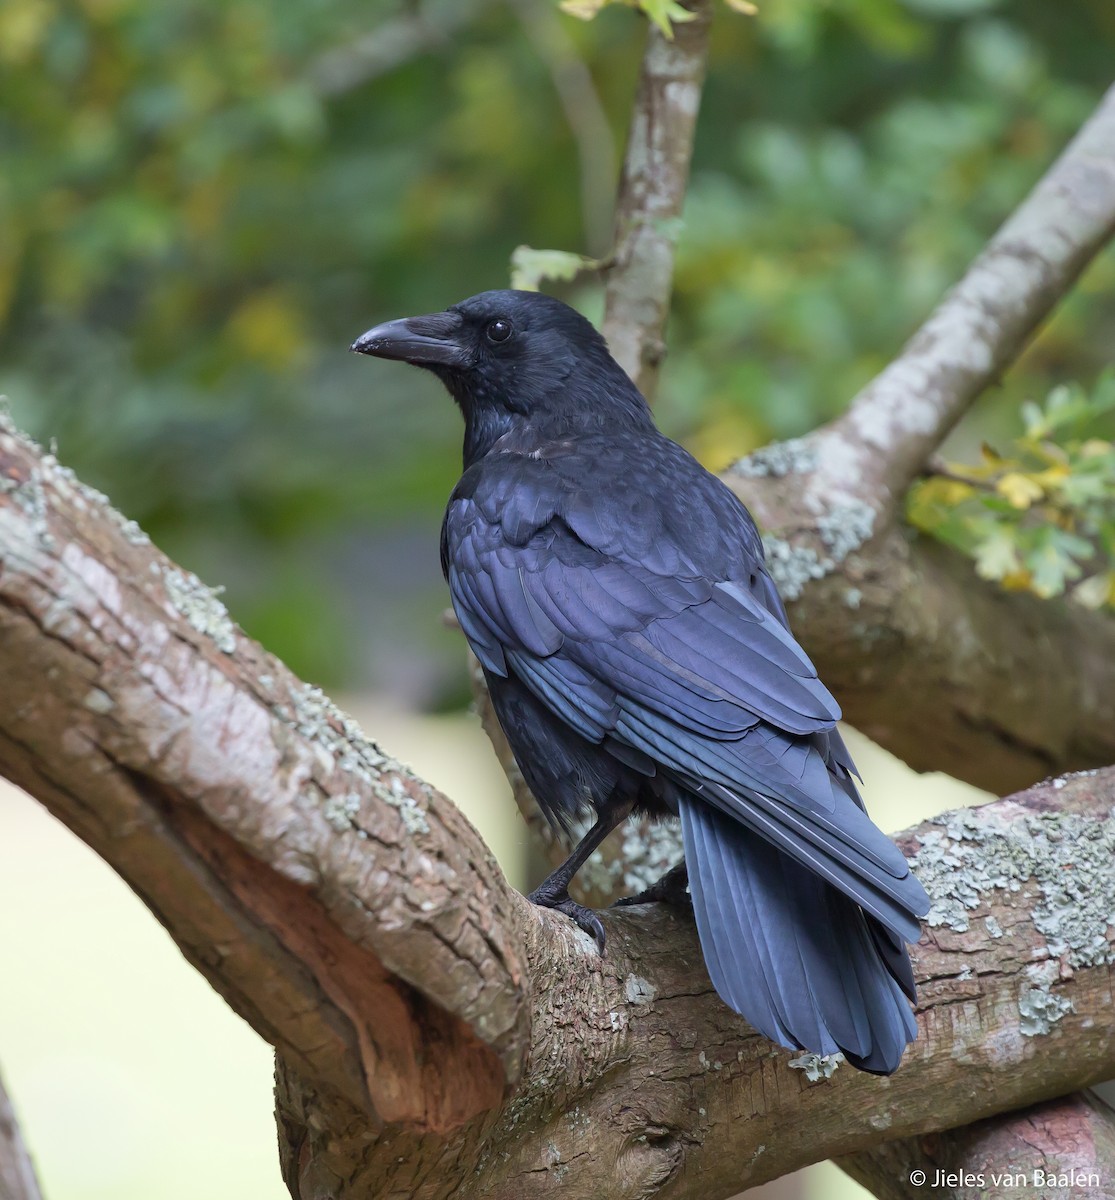 Carrion Crow - Jieles van Baalen